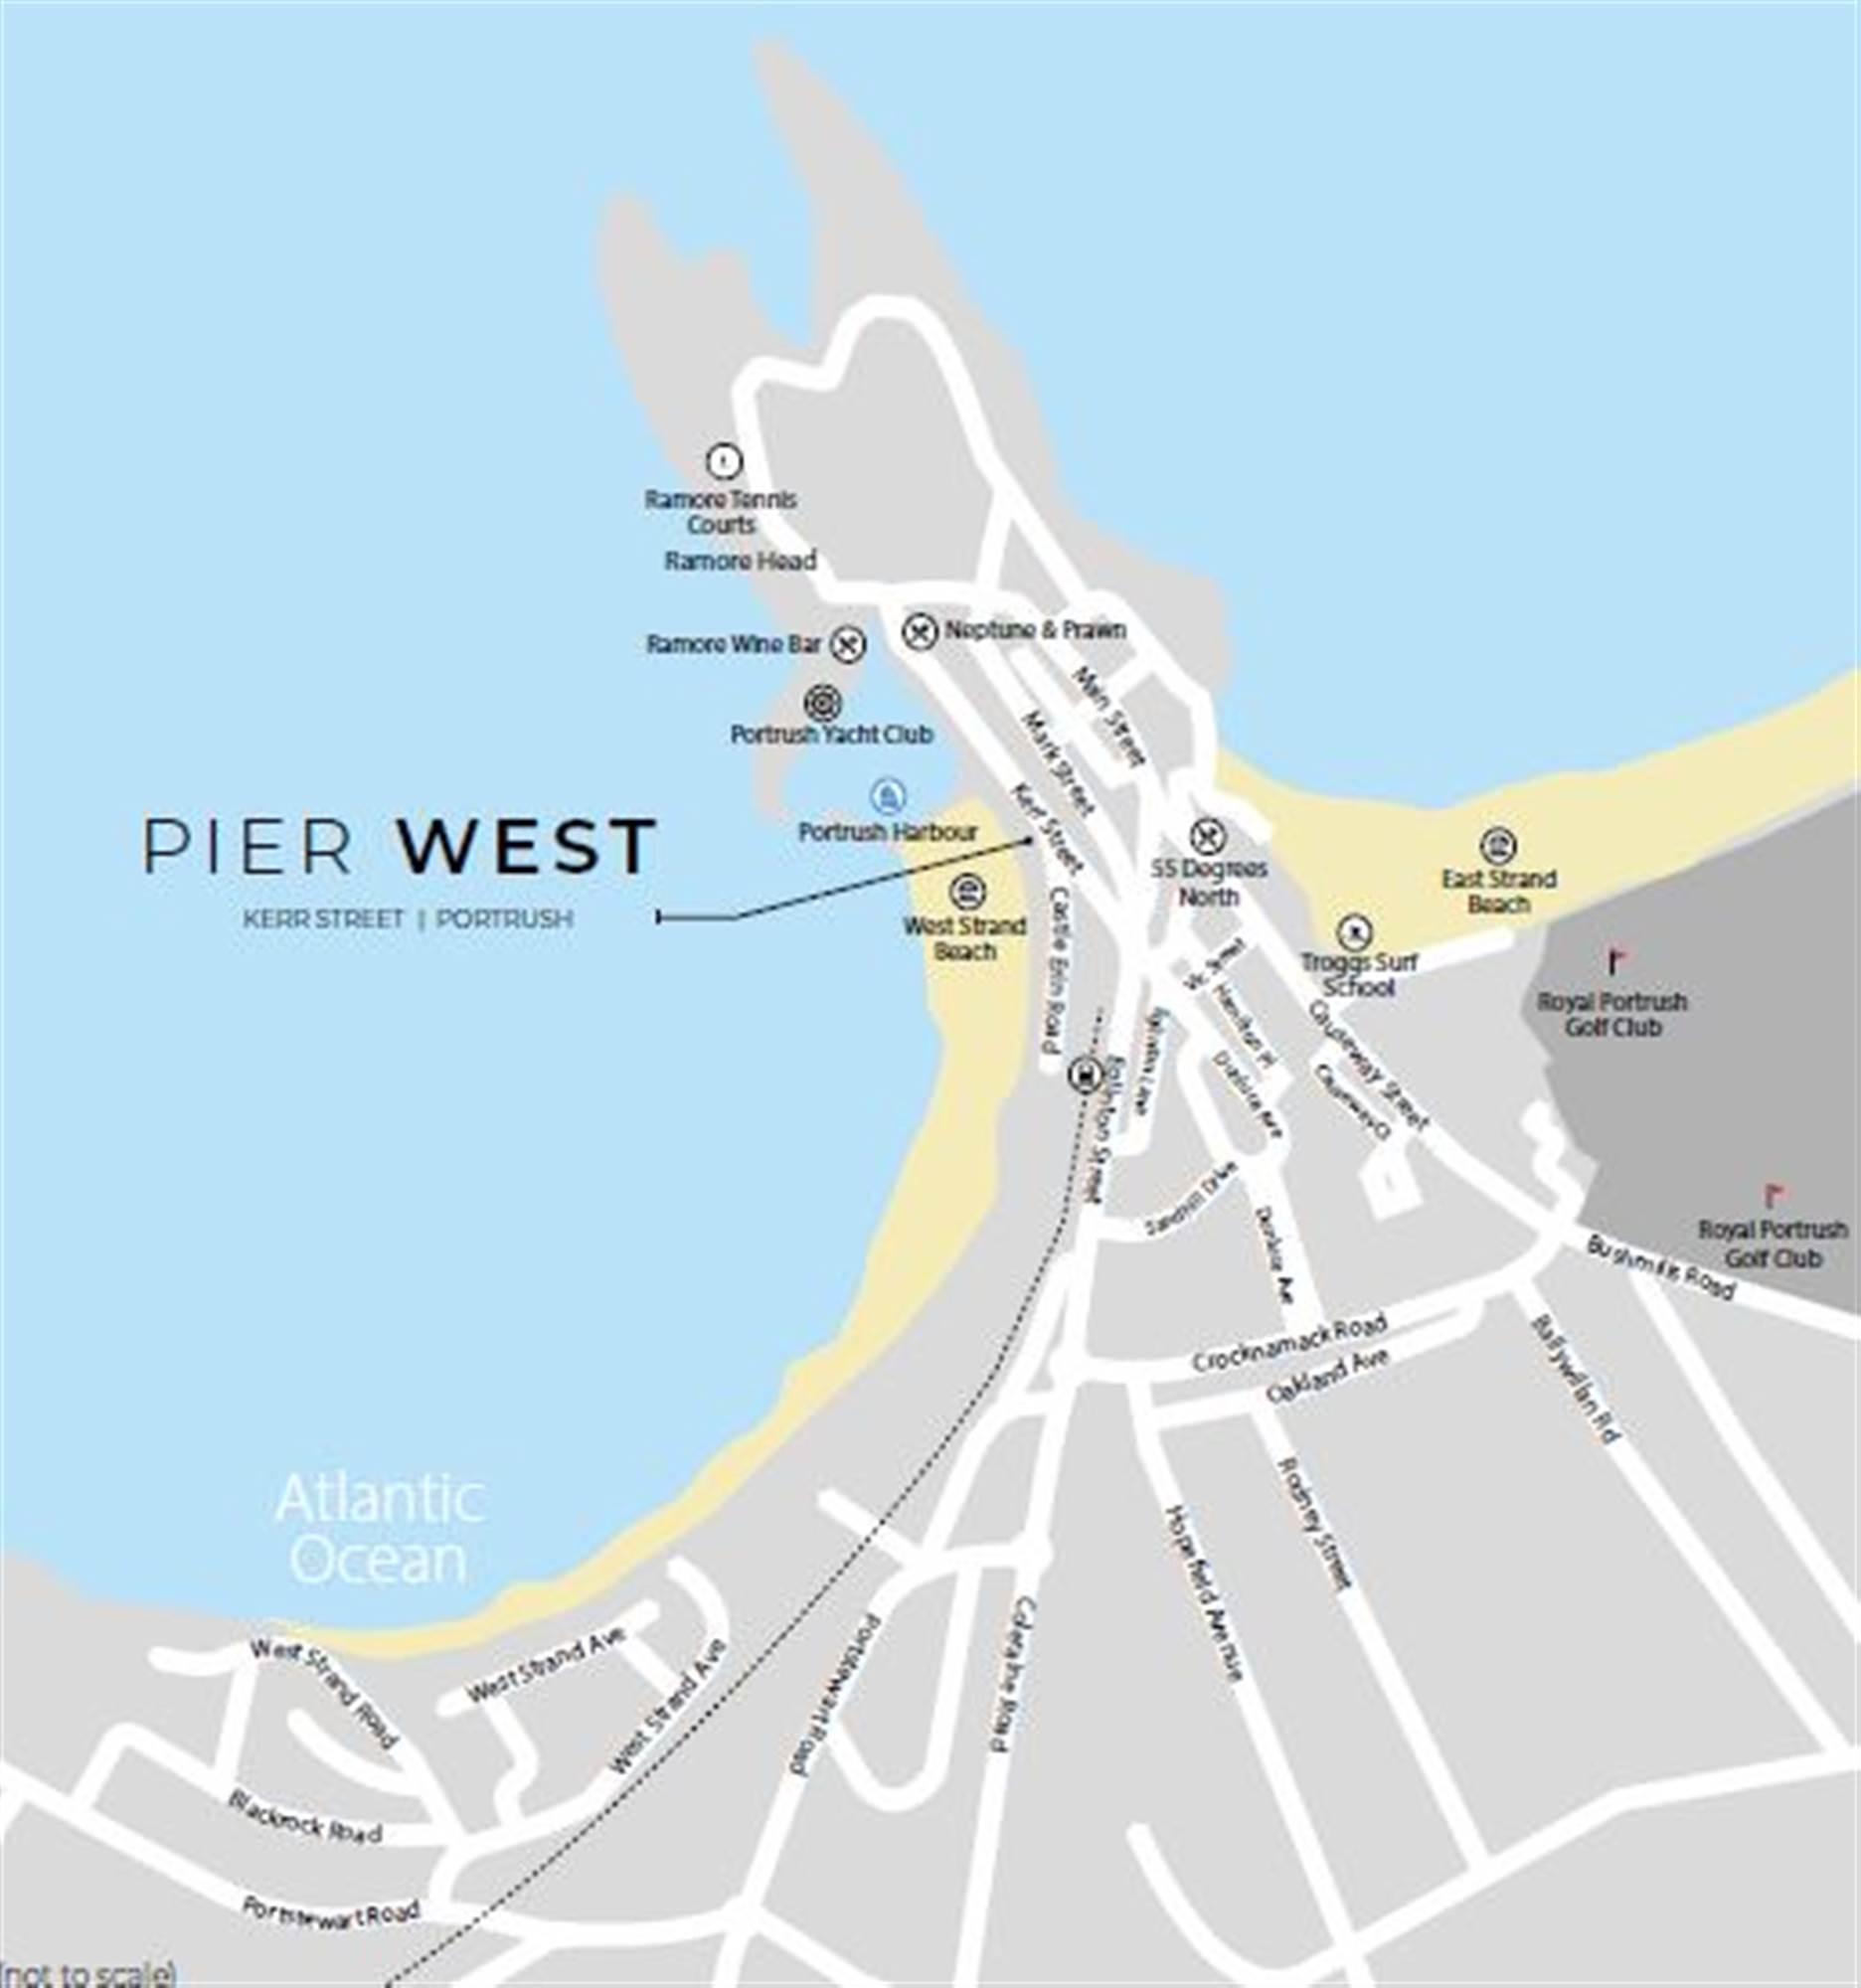 5 Pier West